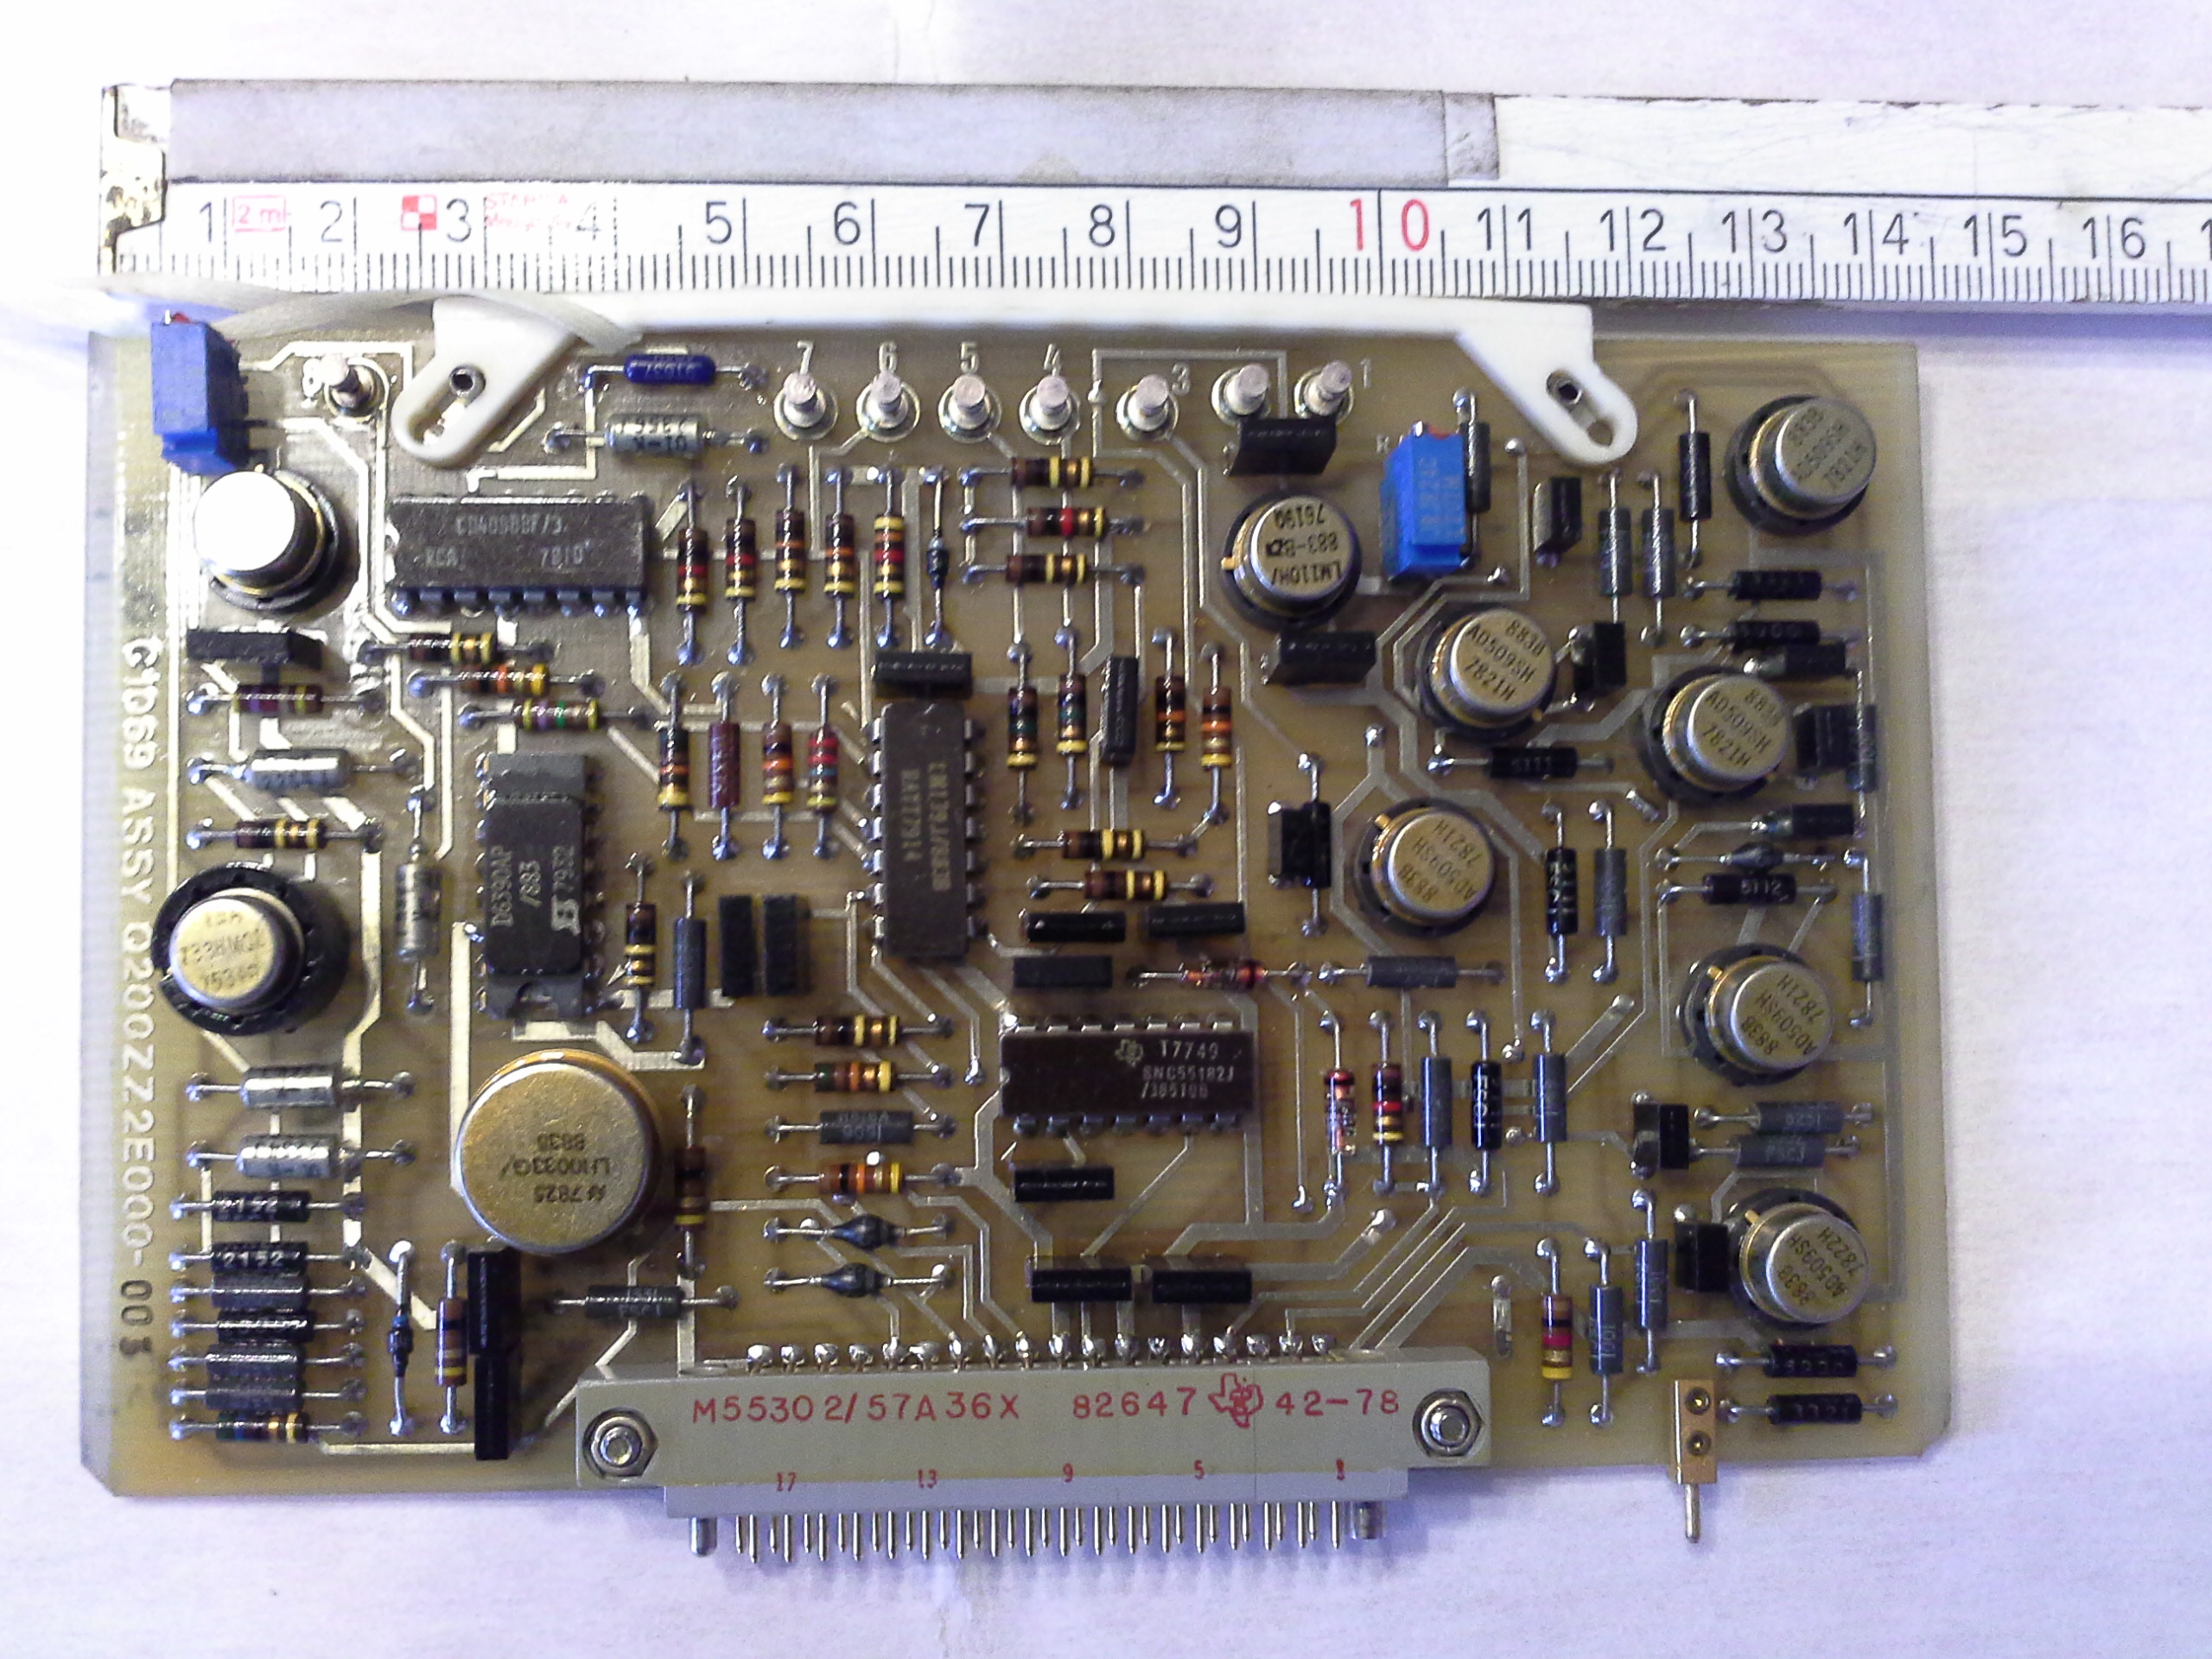 Gedruckte Schaltkreis A5 ARD Interface Q200ZZ2E000-003